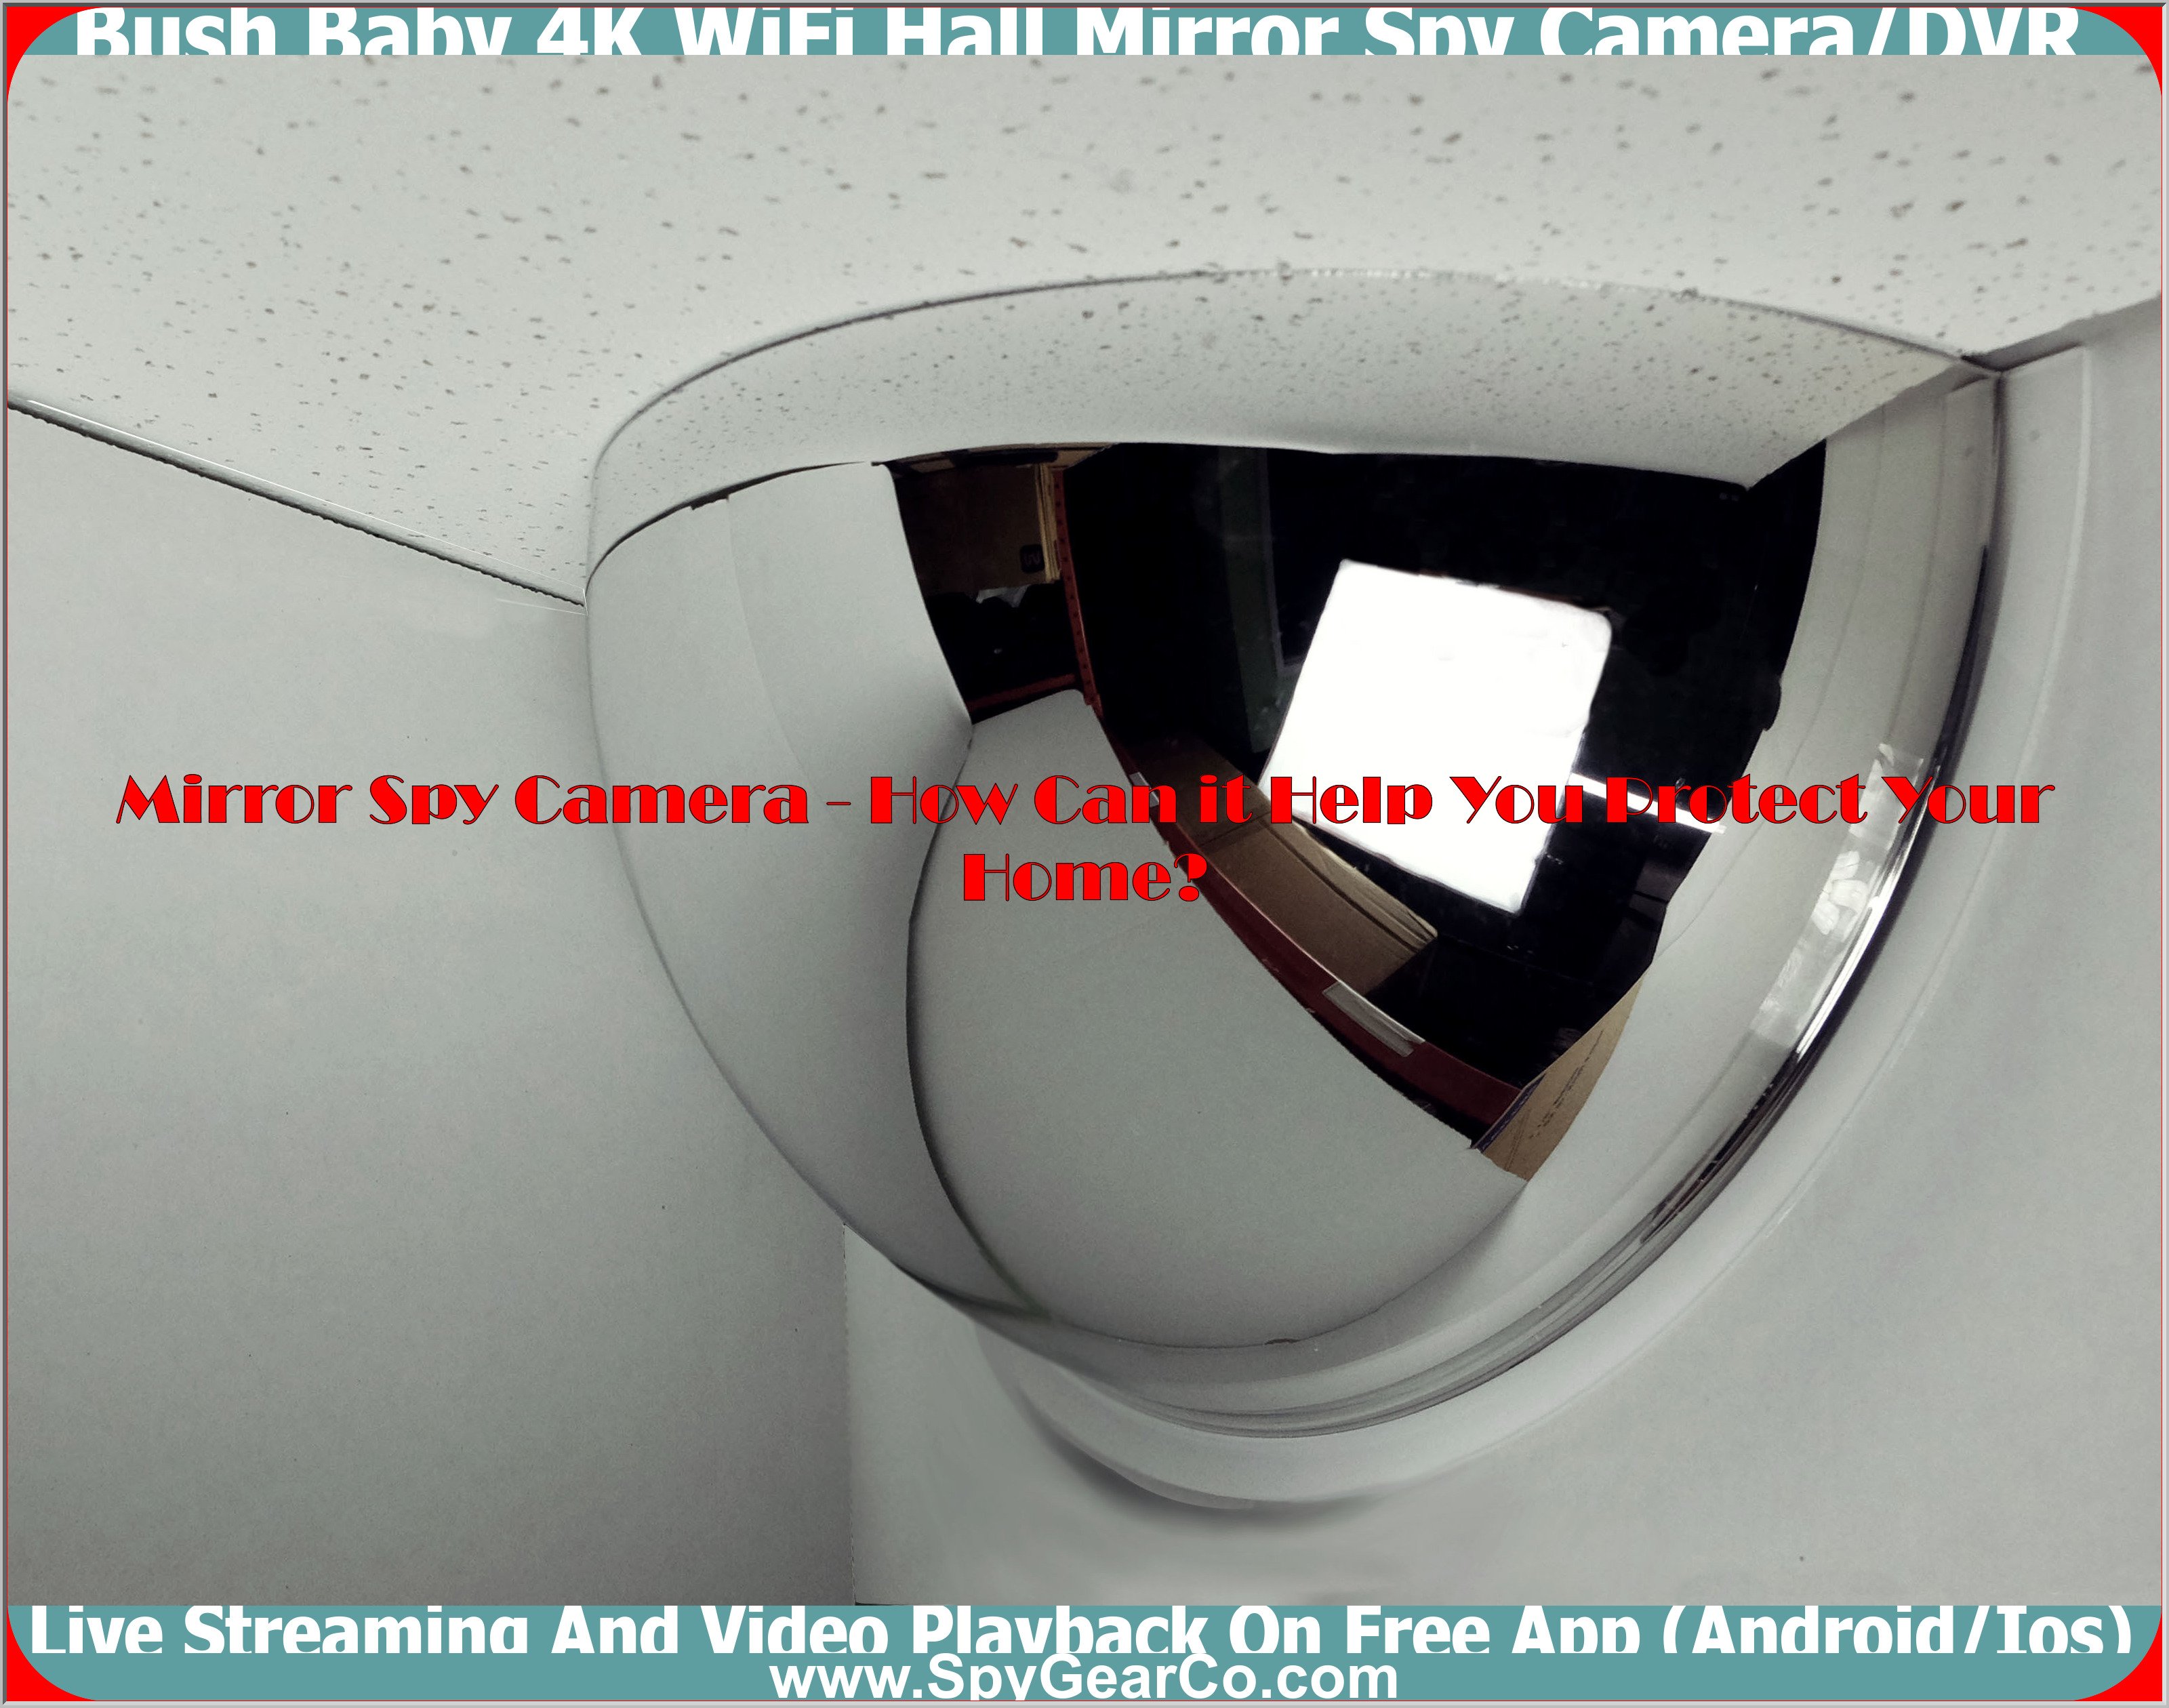 Bush Baby 4K WiFi Hall Mirror Spy Camera/DVR